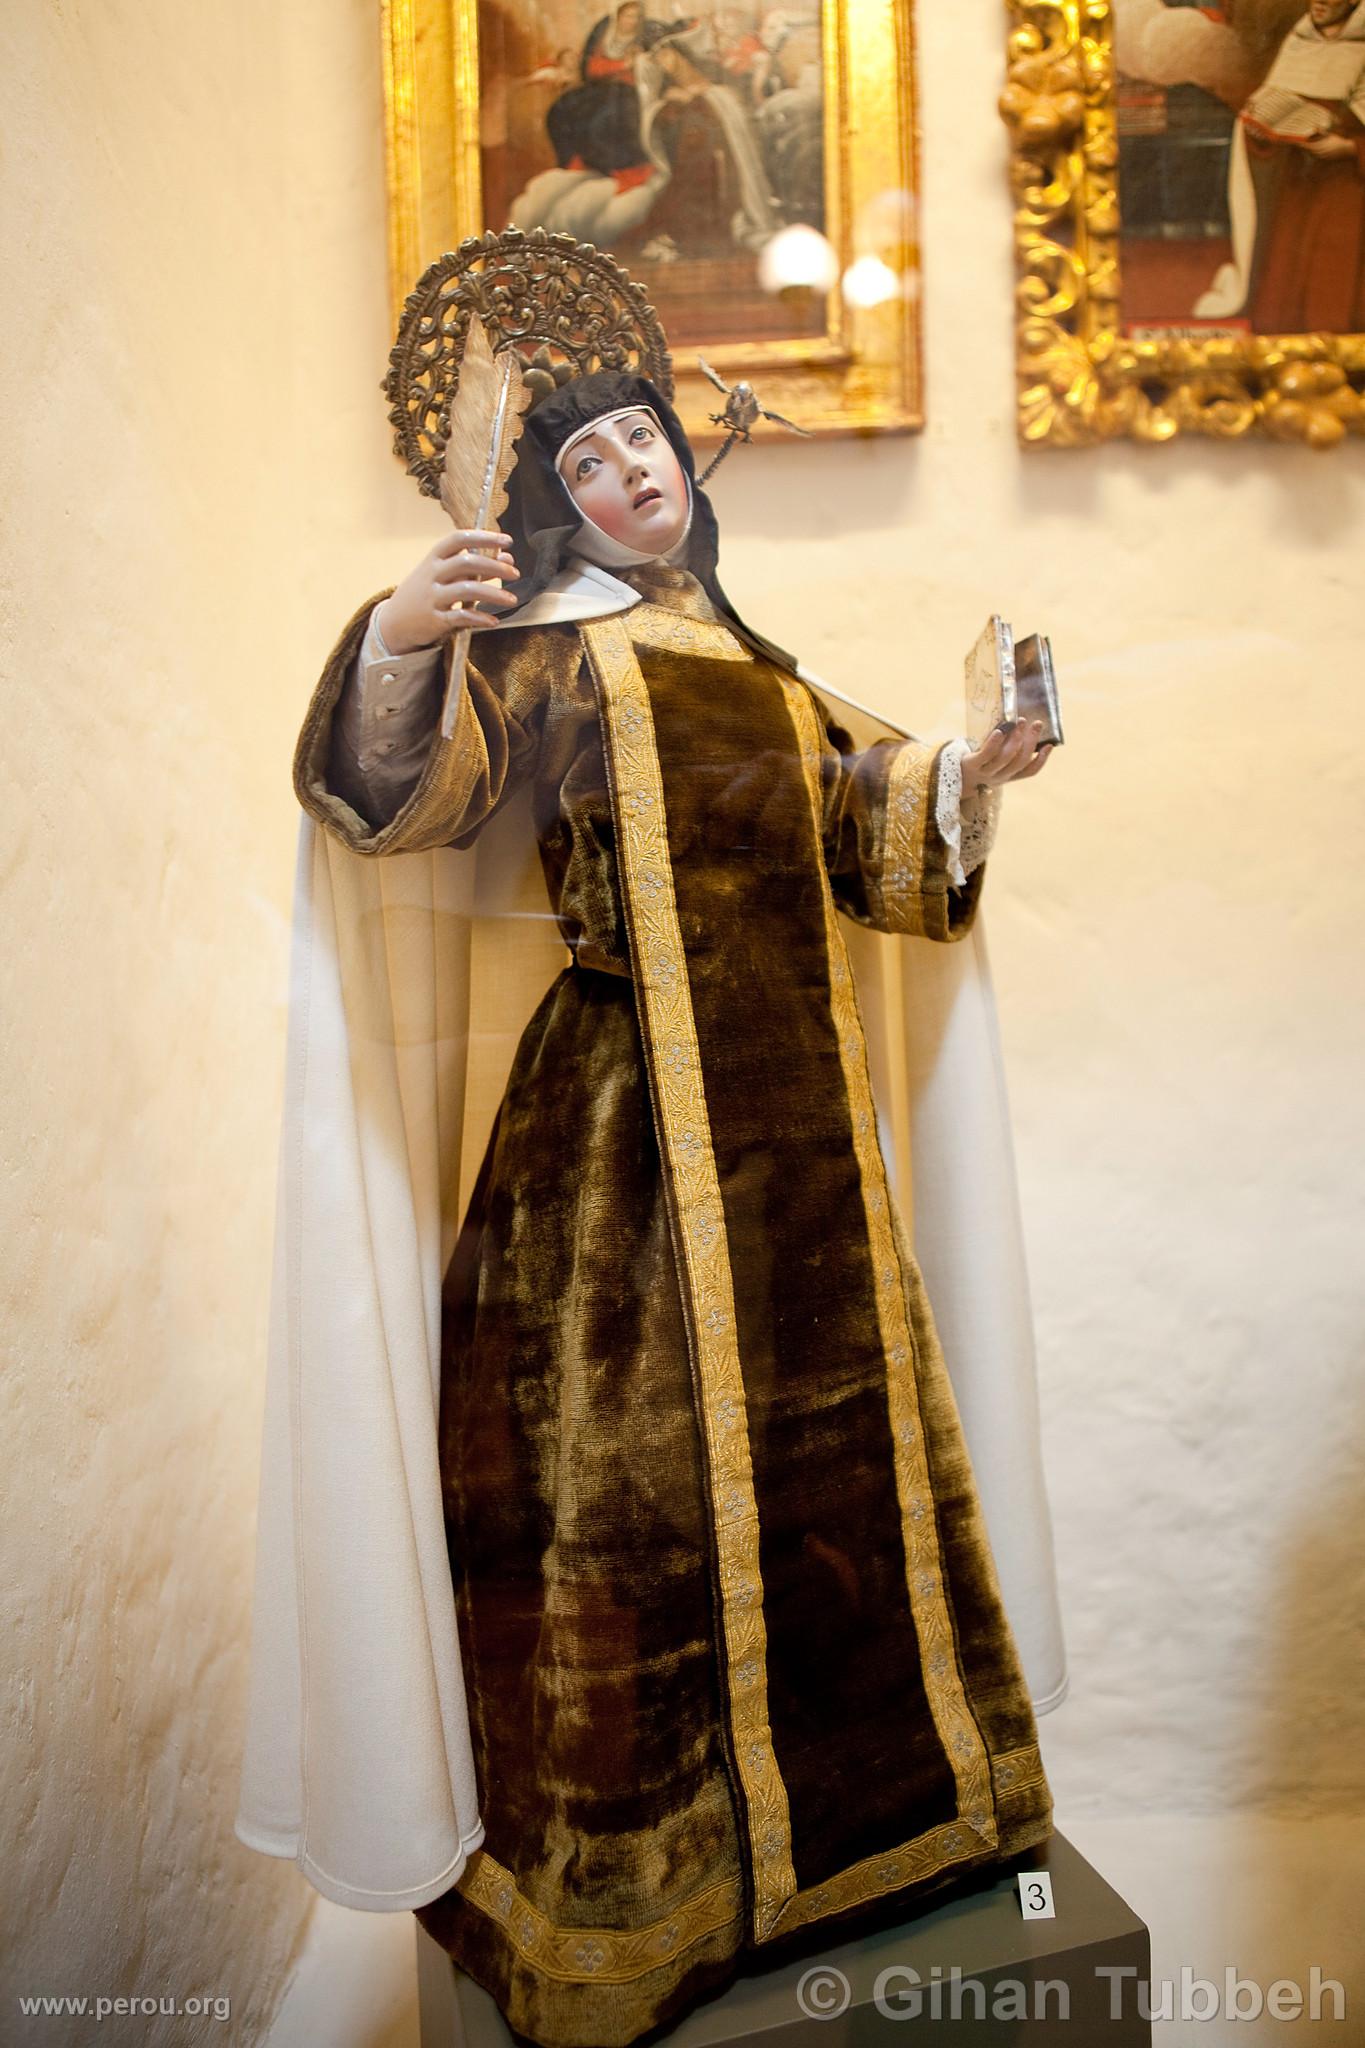 Monastre de Santa Teresa